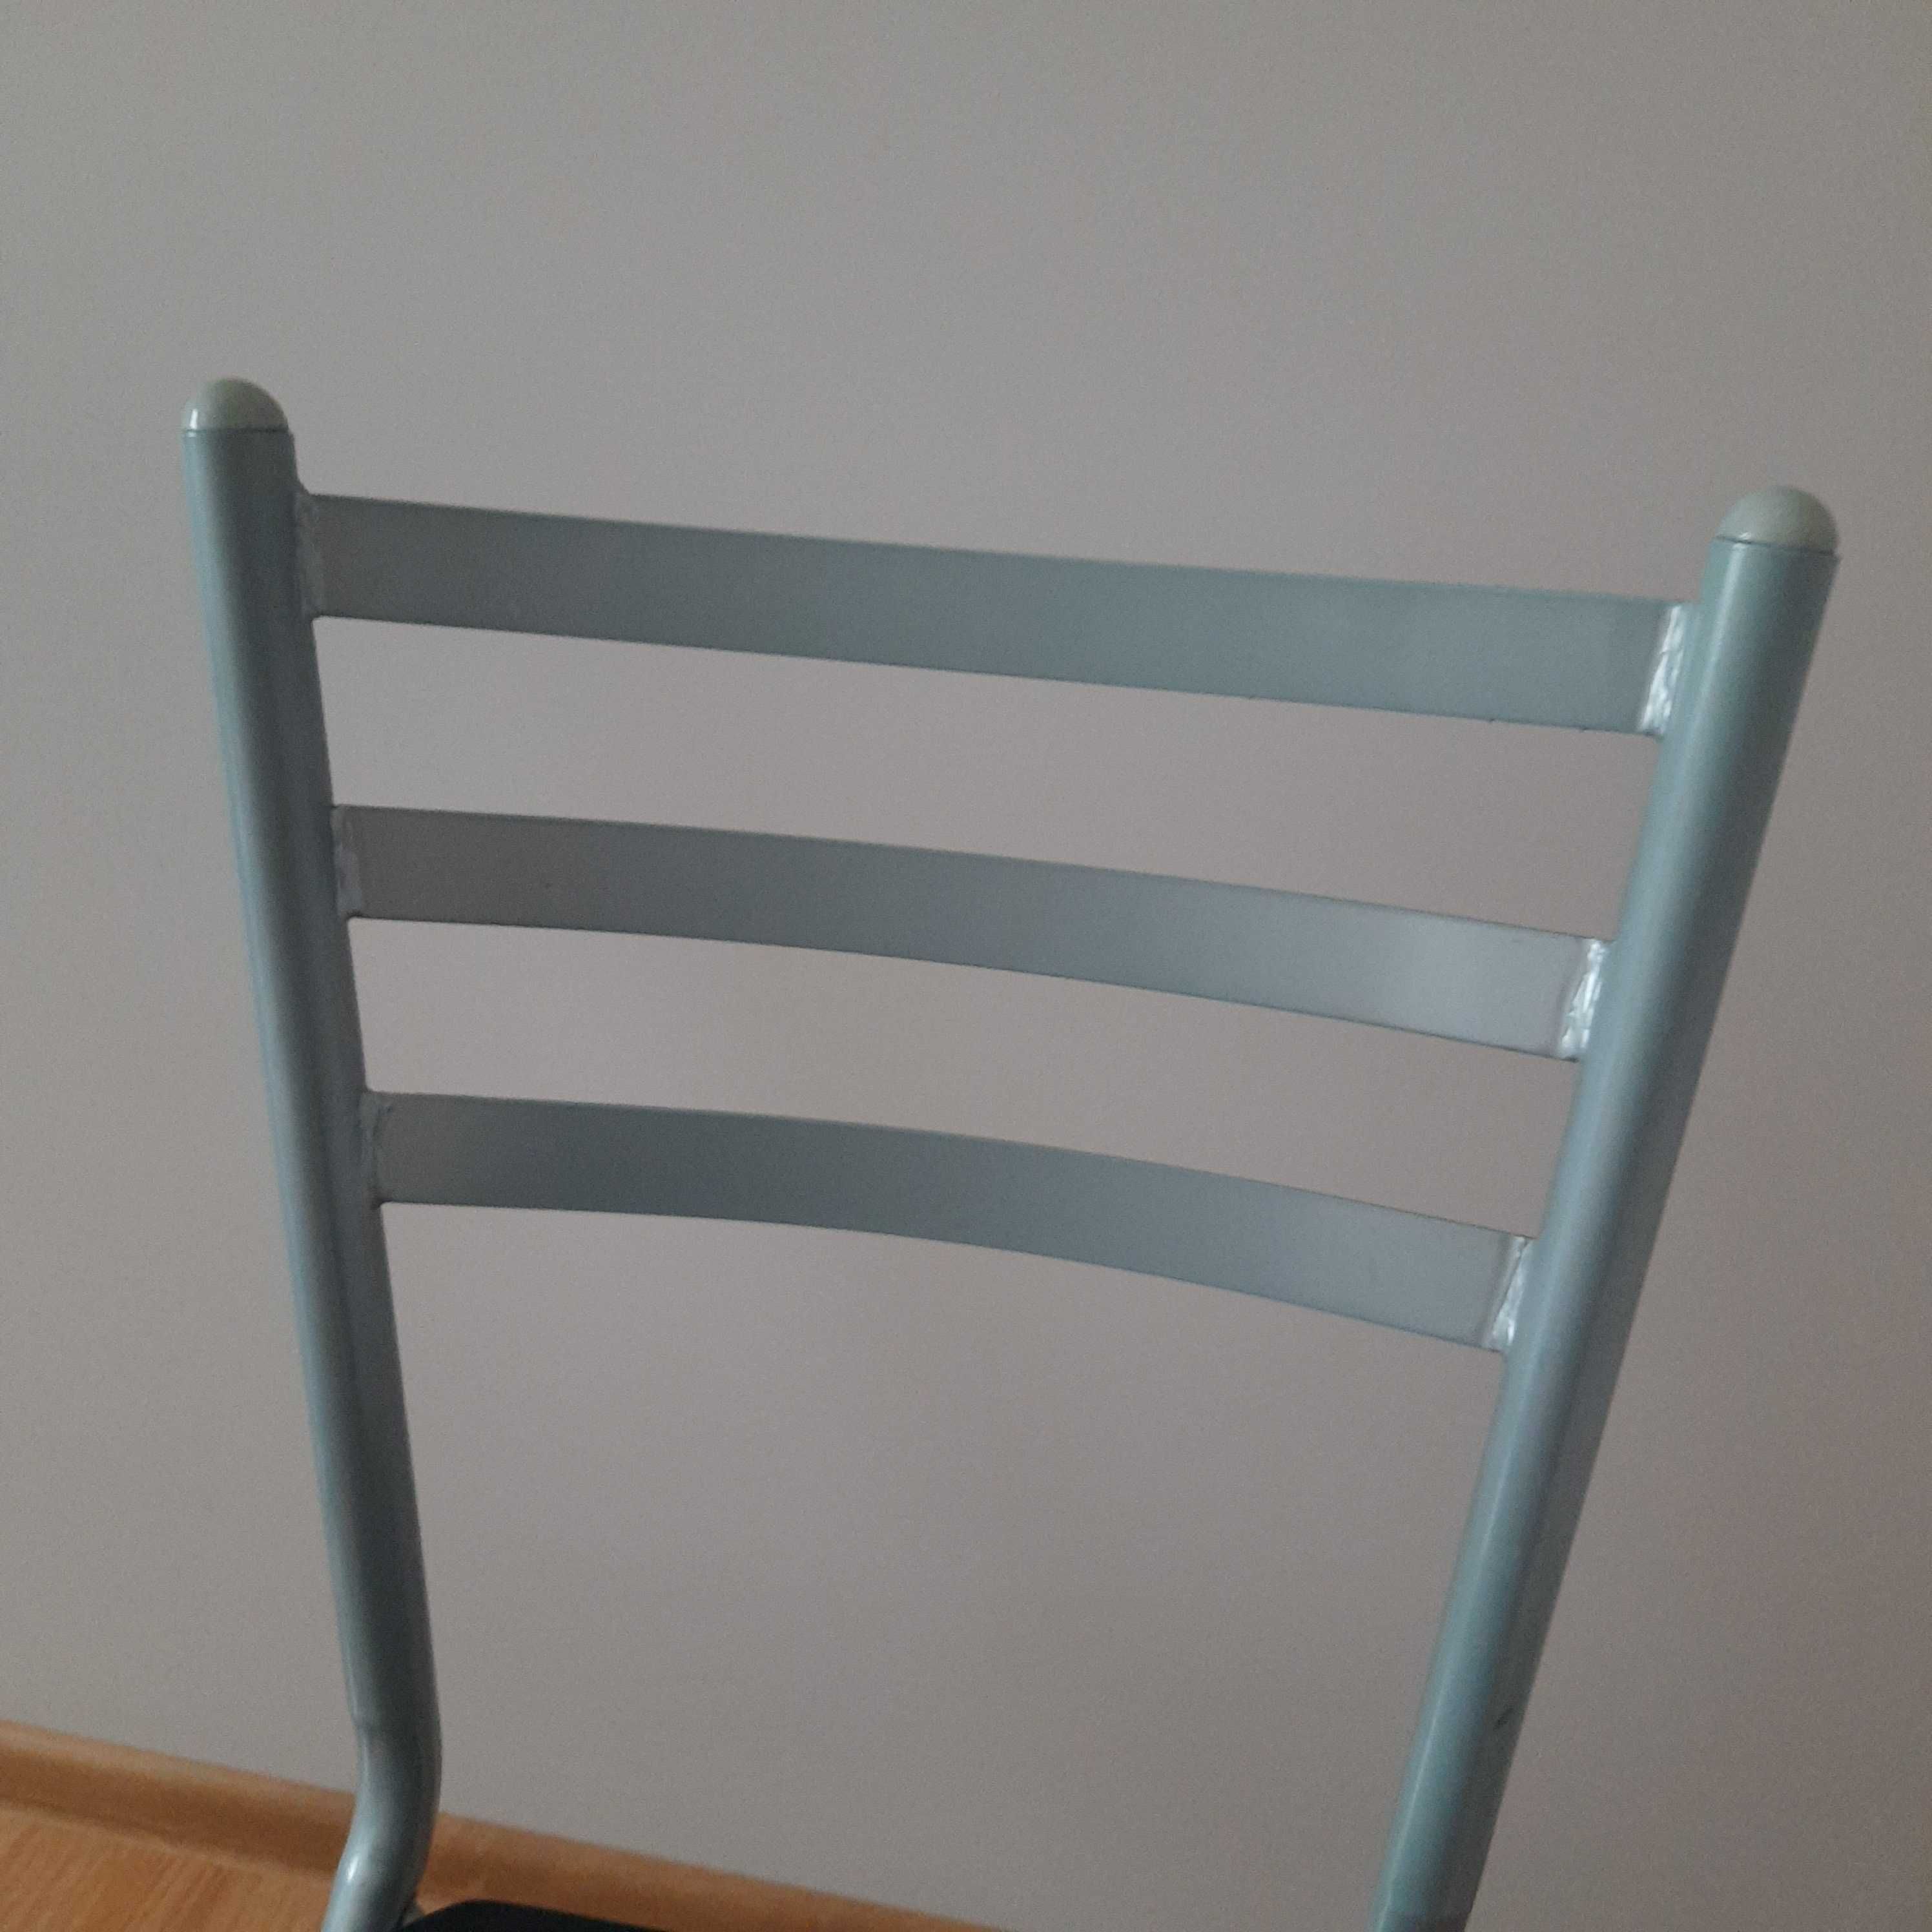 стілець металевий складний -2 шт/крісло/1500 грн за два